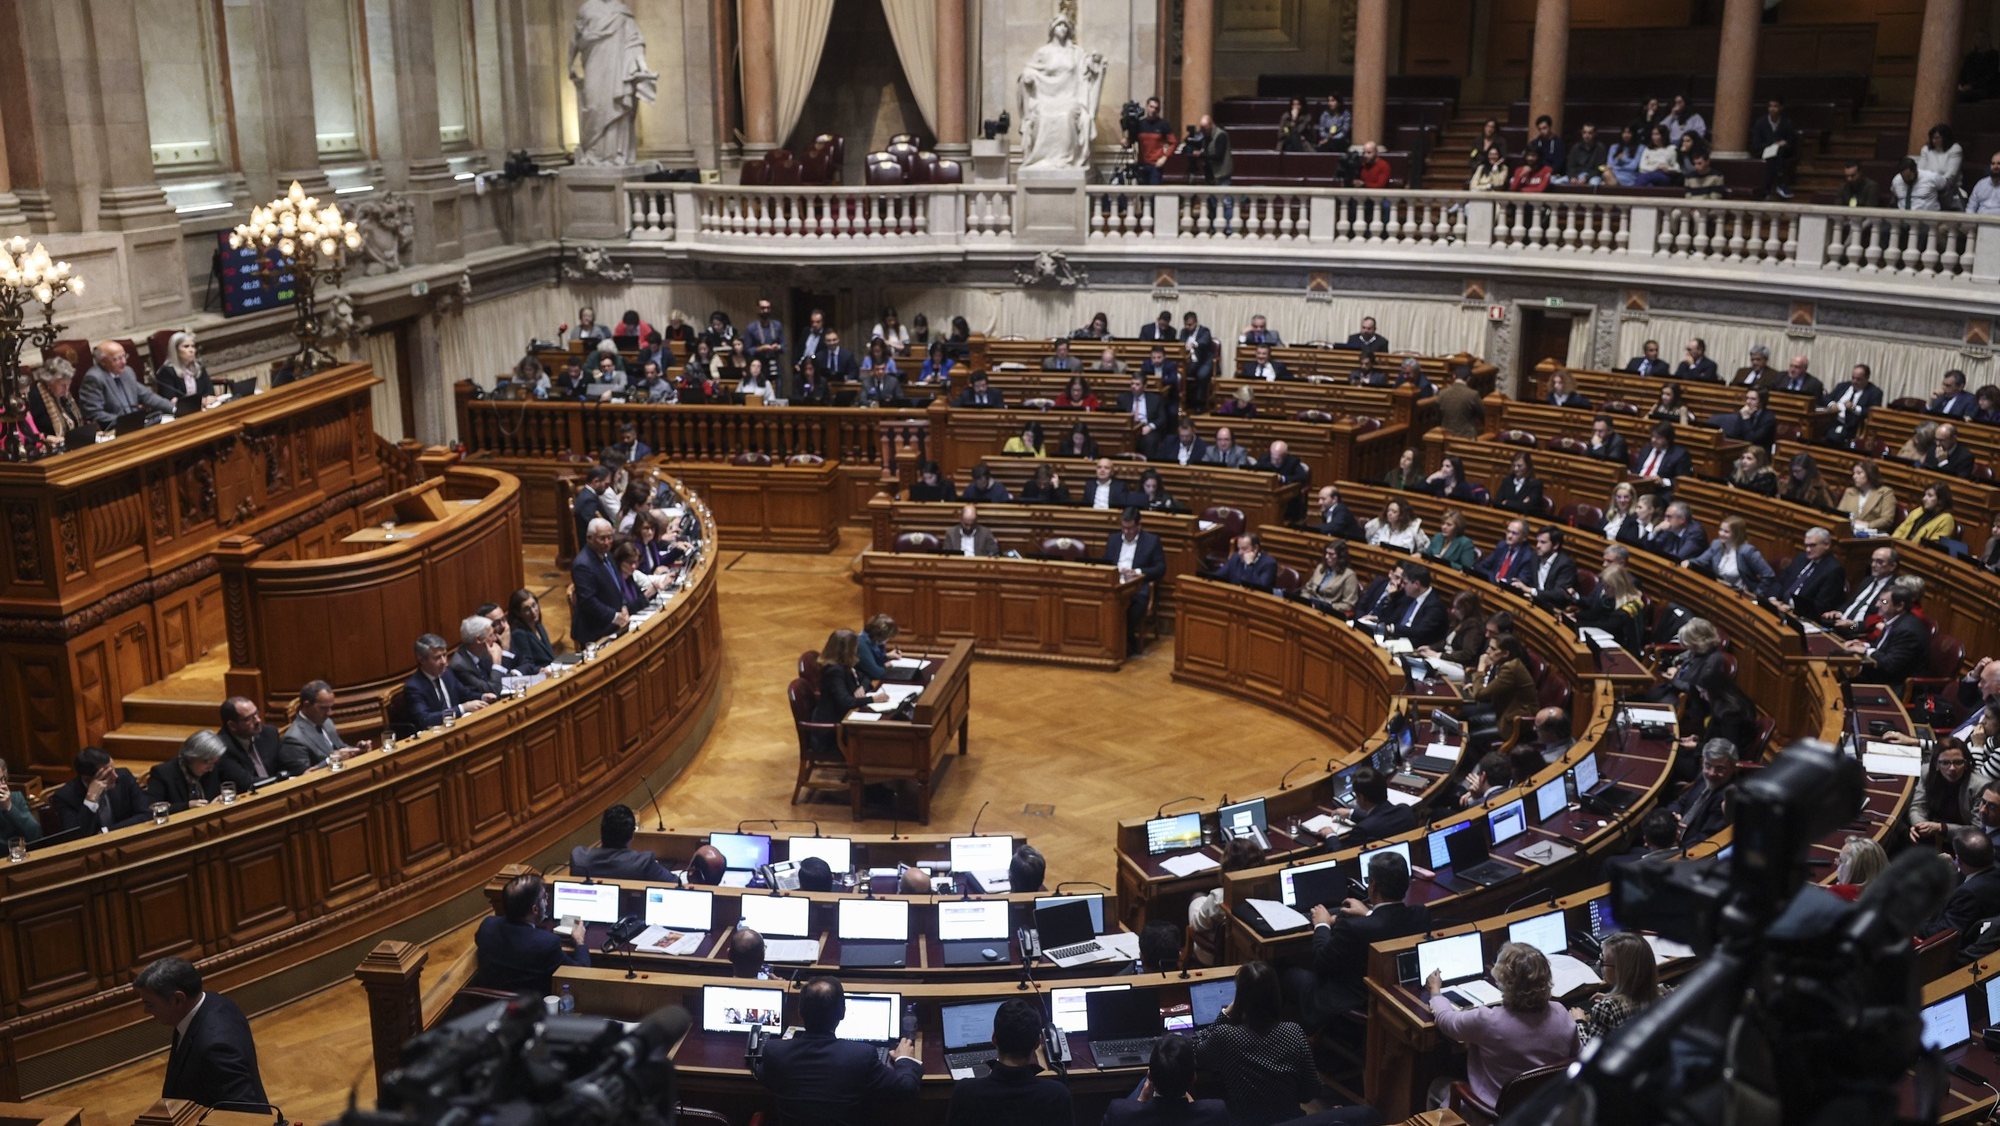 O primeiro Ministro António Costa intervém no debate parlamentar sobre política geral, esta tarde na Assembleia da República em Lisboa, 11 de janeiro de 2023. MIGUEL A. LOPES/LUSA